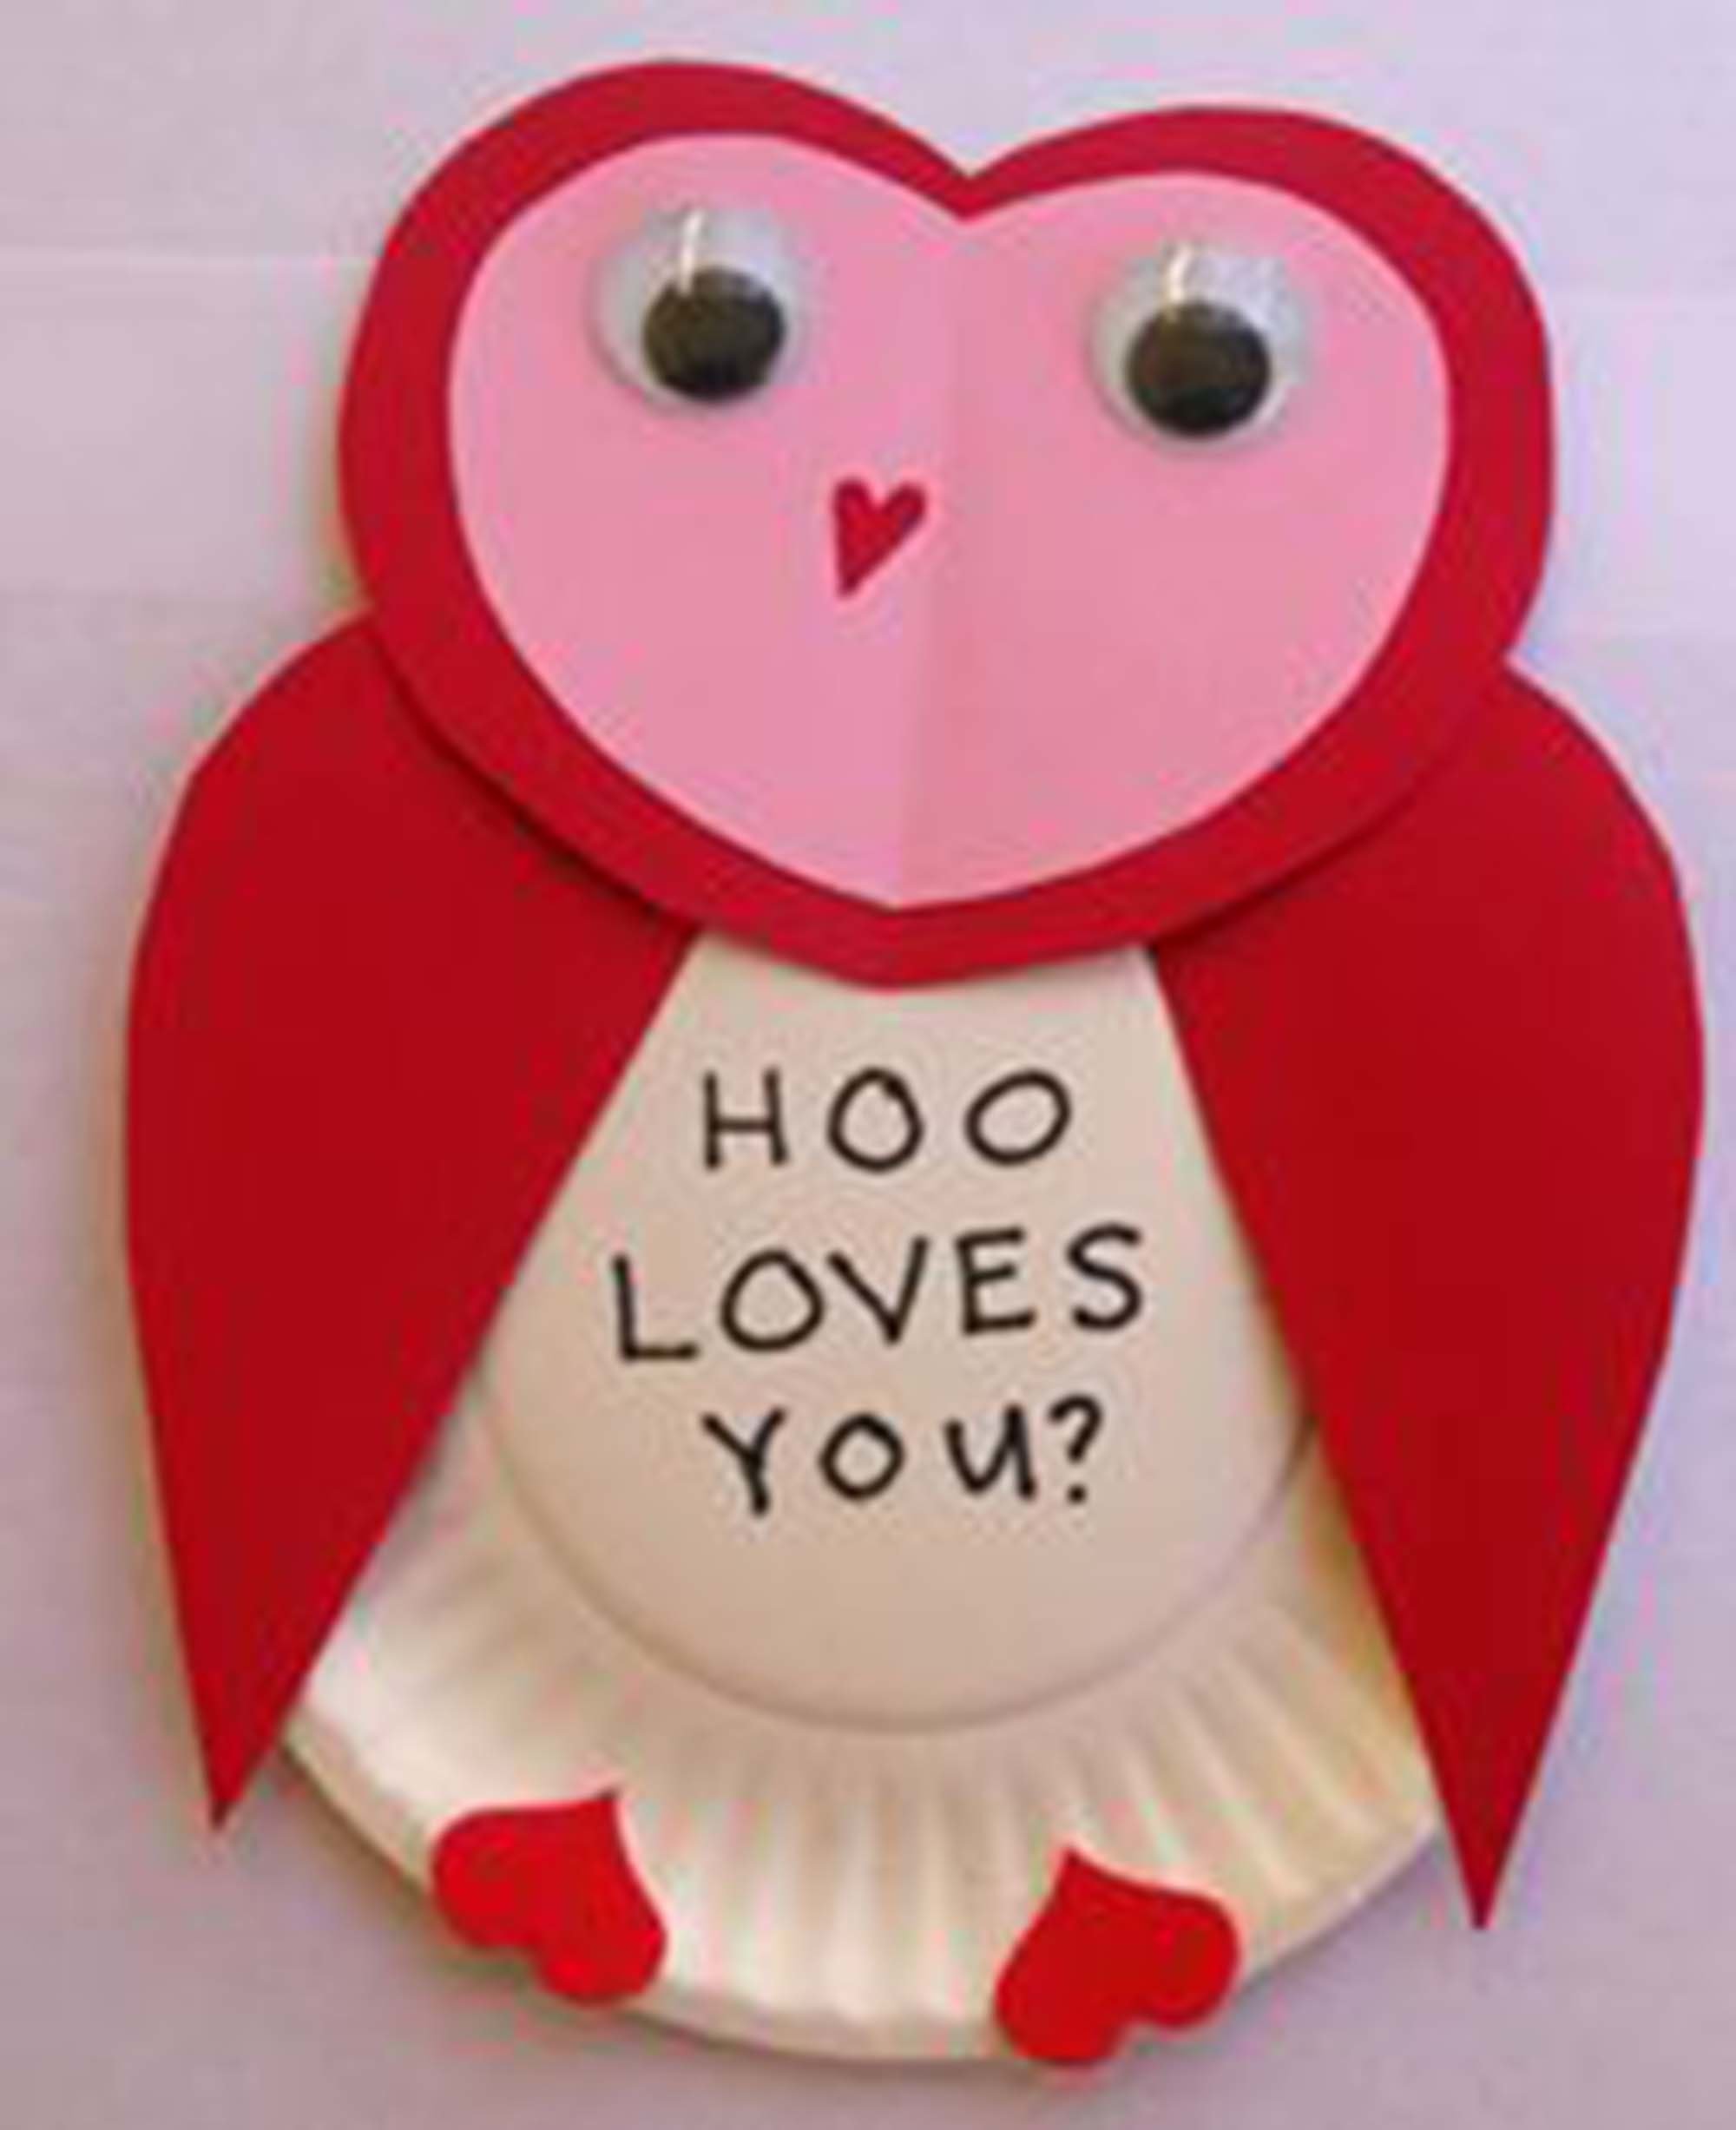 easy kindergarten valentine crafts